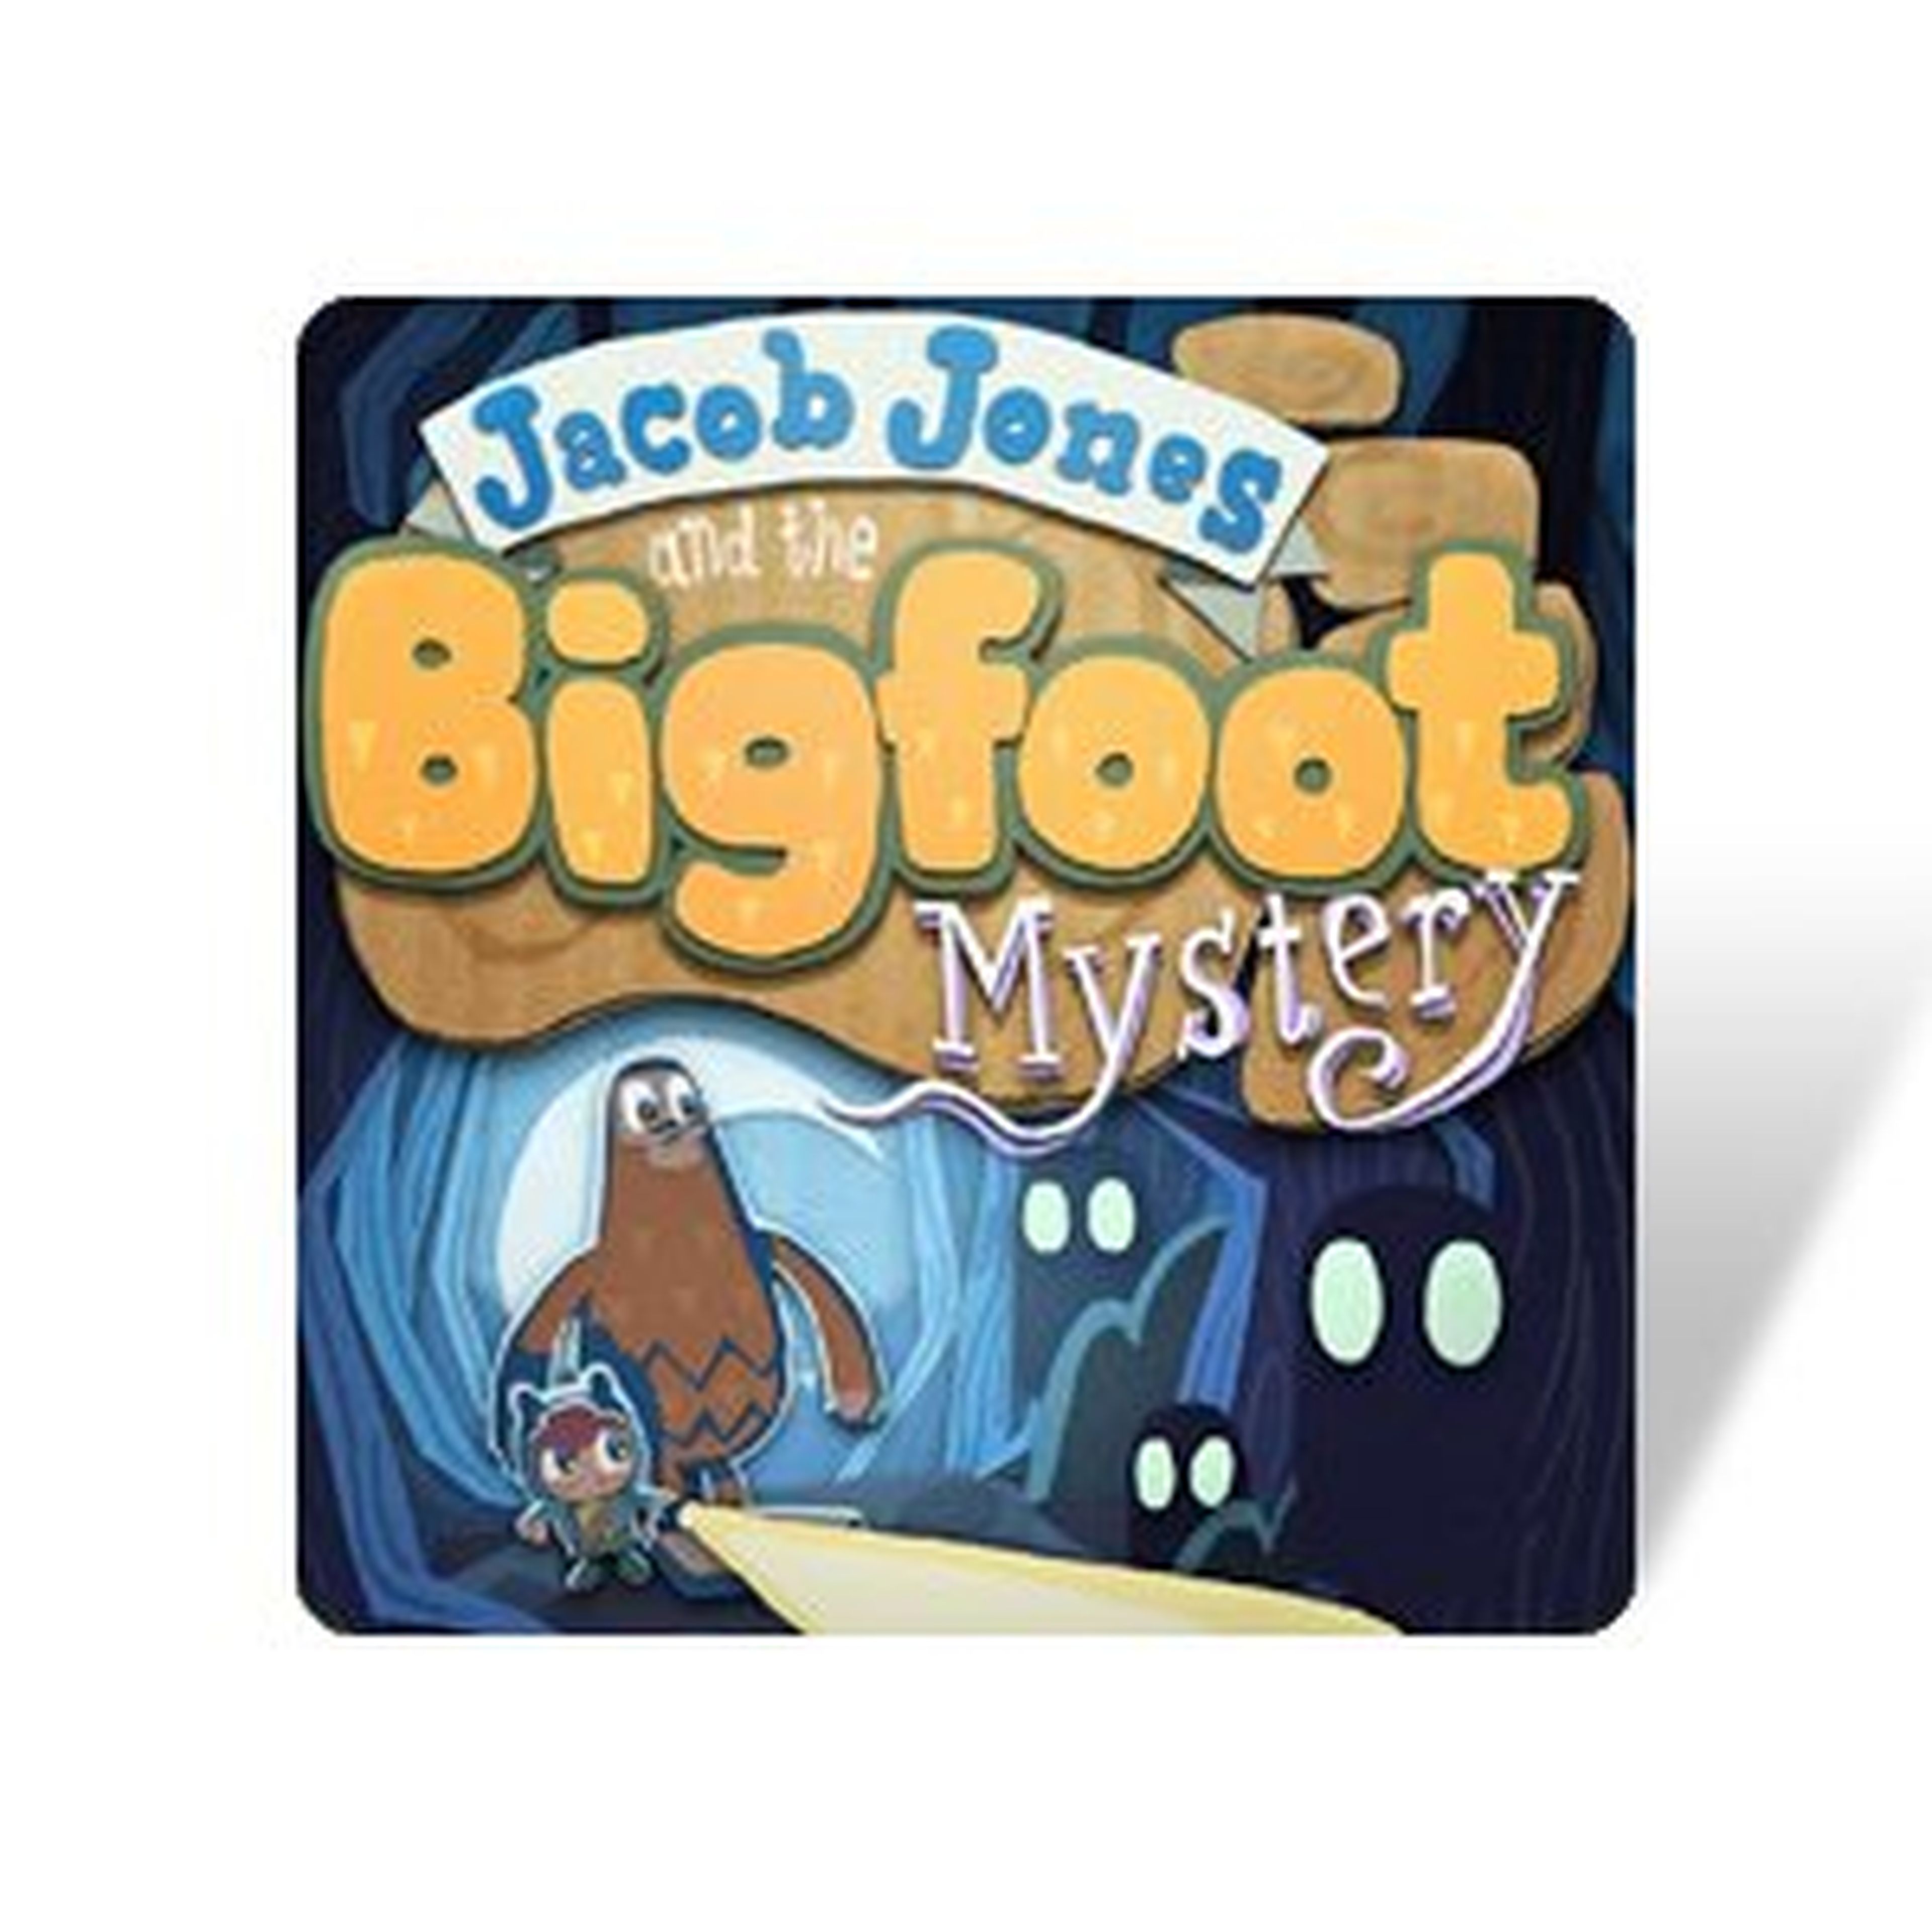 Jacob Jones and the Bigfoot Mistery para Vita